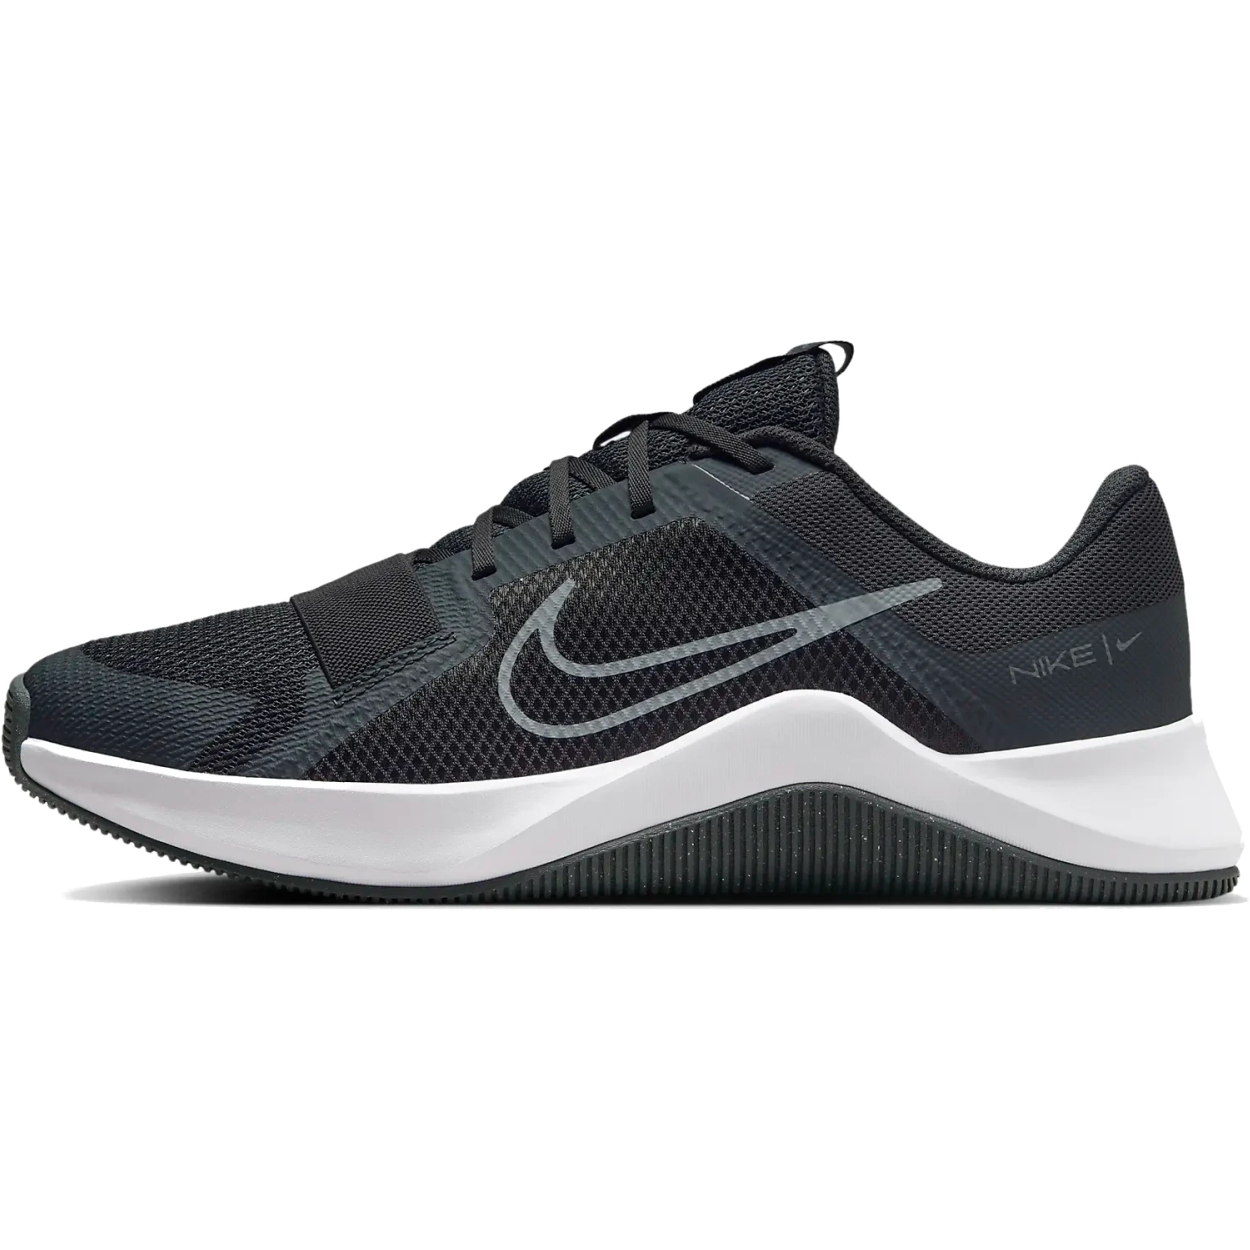 Produktbild von Nike MC Trainer 2 Fitnessschuhe Herren - dark smoke grey/white/monarch/smoke grey DM0823-011